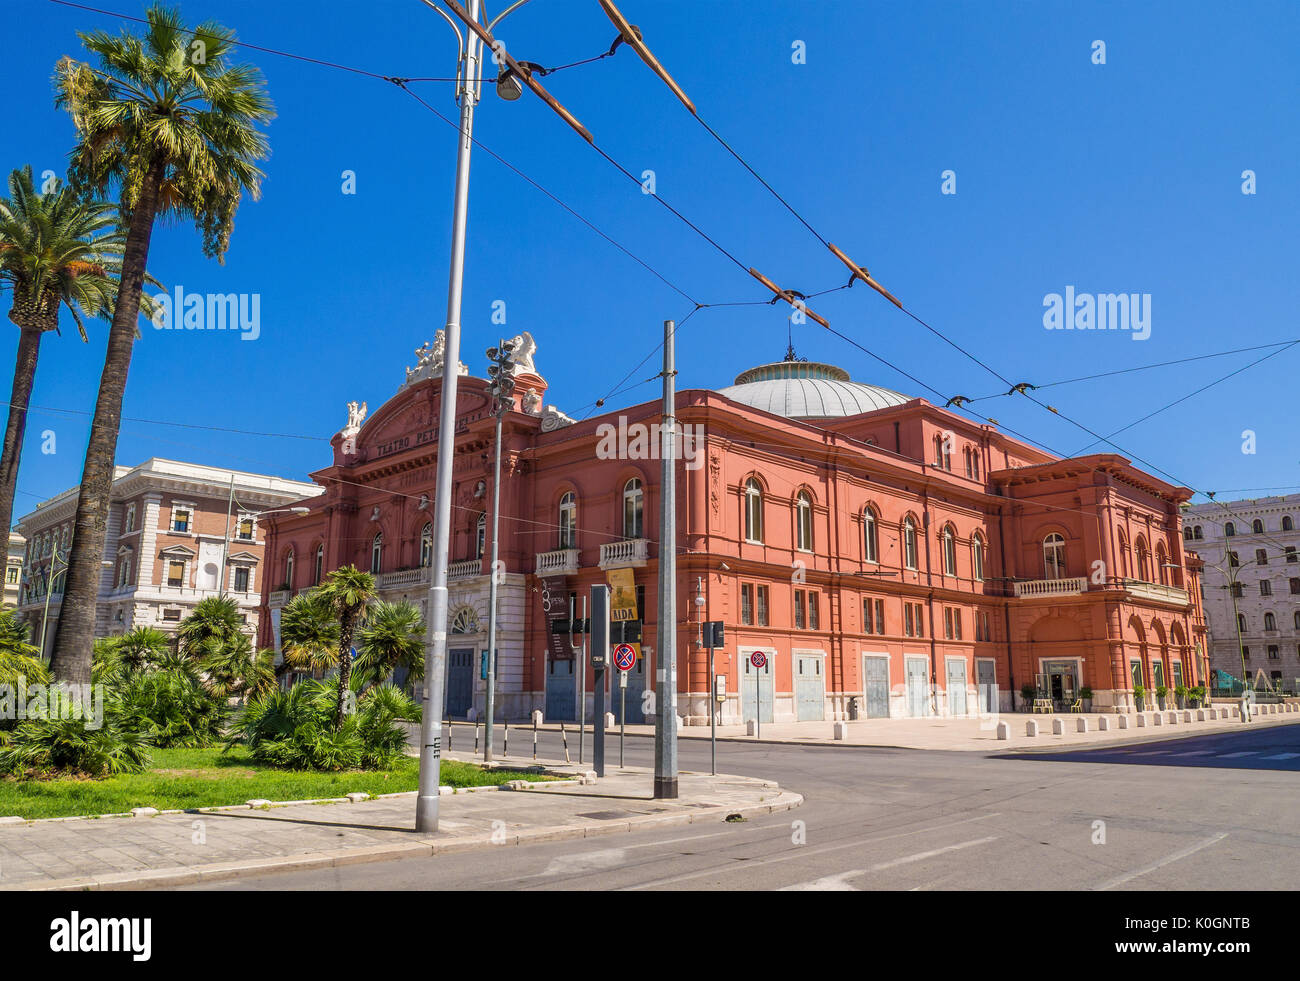 Bari, Italia - La capital de la región de Apulia, una gran ciudad en el mar Adriático, con centro histórico llamado Bari Vecchia y el famoso Waterfront Foto de stock